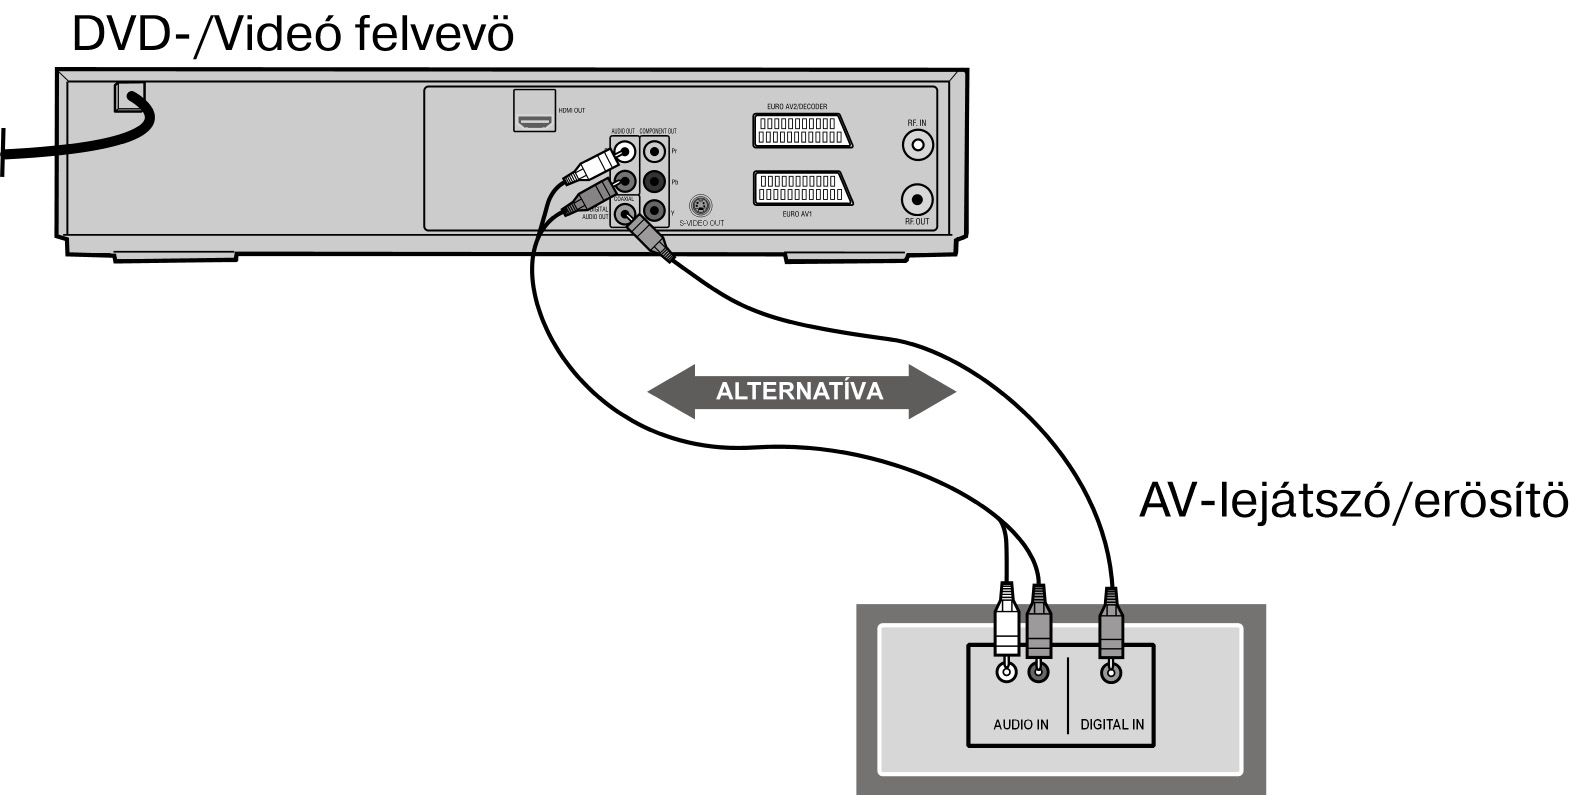 Csatlakozás egy Surround erősítőhöz / receiver-hez Opciós lehetőség, hogy a DVD/videófelvevőt egy audio vagy digitális Surround-erősítőhöz csatlakoztatja.